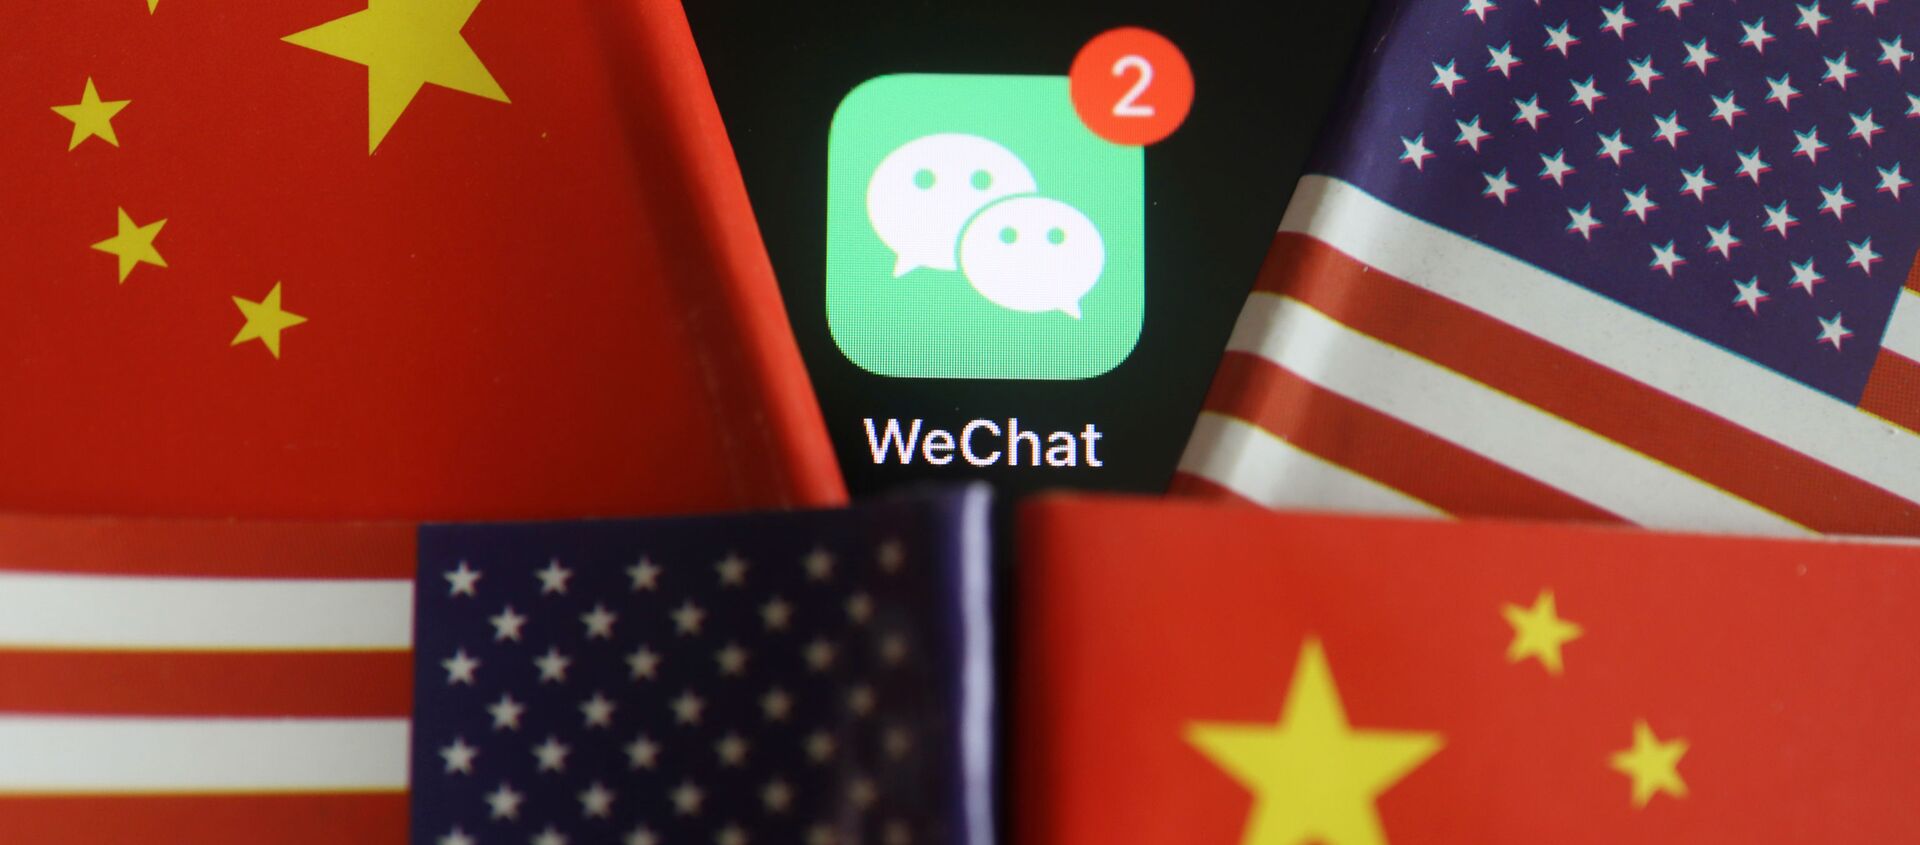 El logo de la aplicación WeChat con las banderas de China y EEUU - Sputnik Mundo, 1920, 10.10.2020